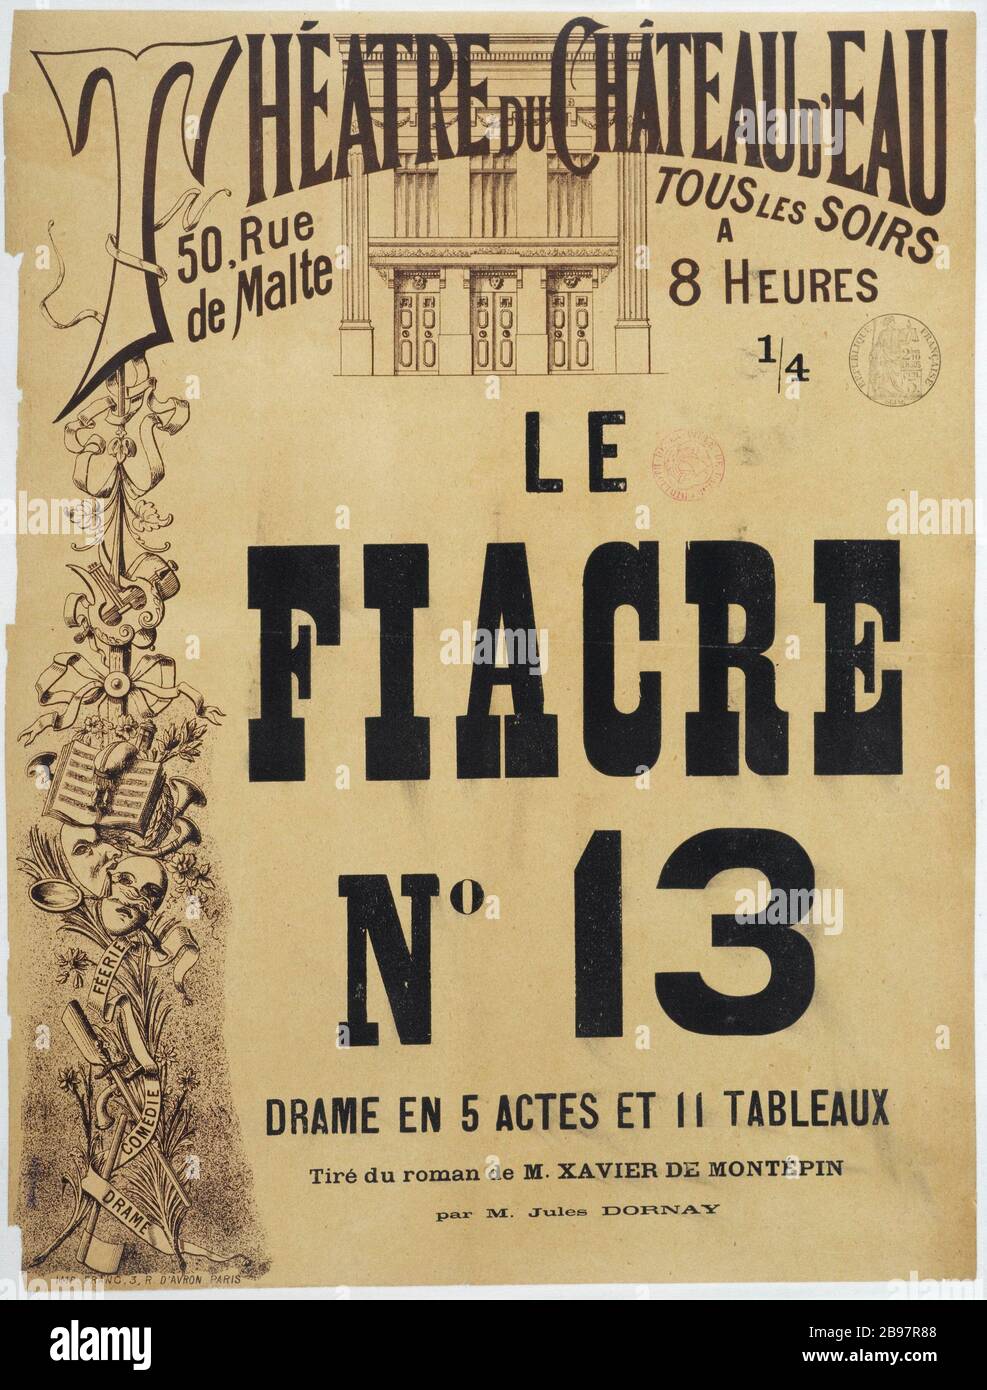 THEATER OF WATER CASTLE, THE FIACRE No13 Imprimerie Franc. Théâtre du Château d'Eau, 'Le Fiacre nº 13'. Affiche. Lithographie noir et blanc. Paris, musée Carnavalet. Stock Photo